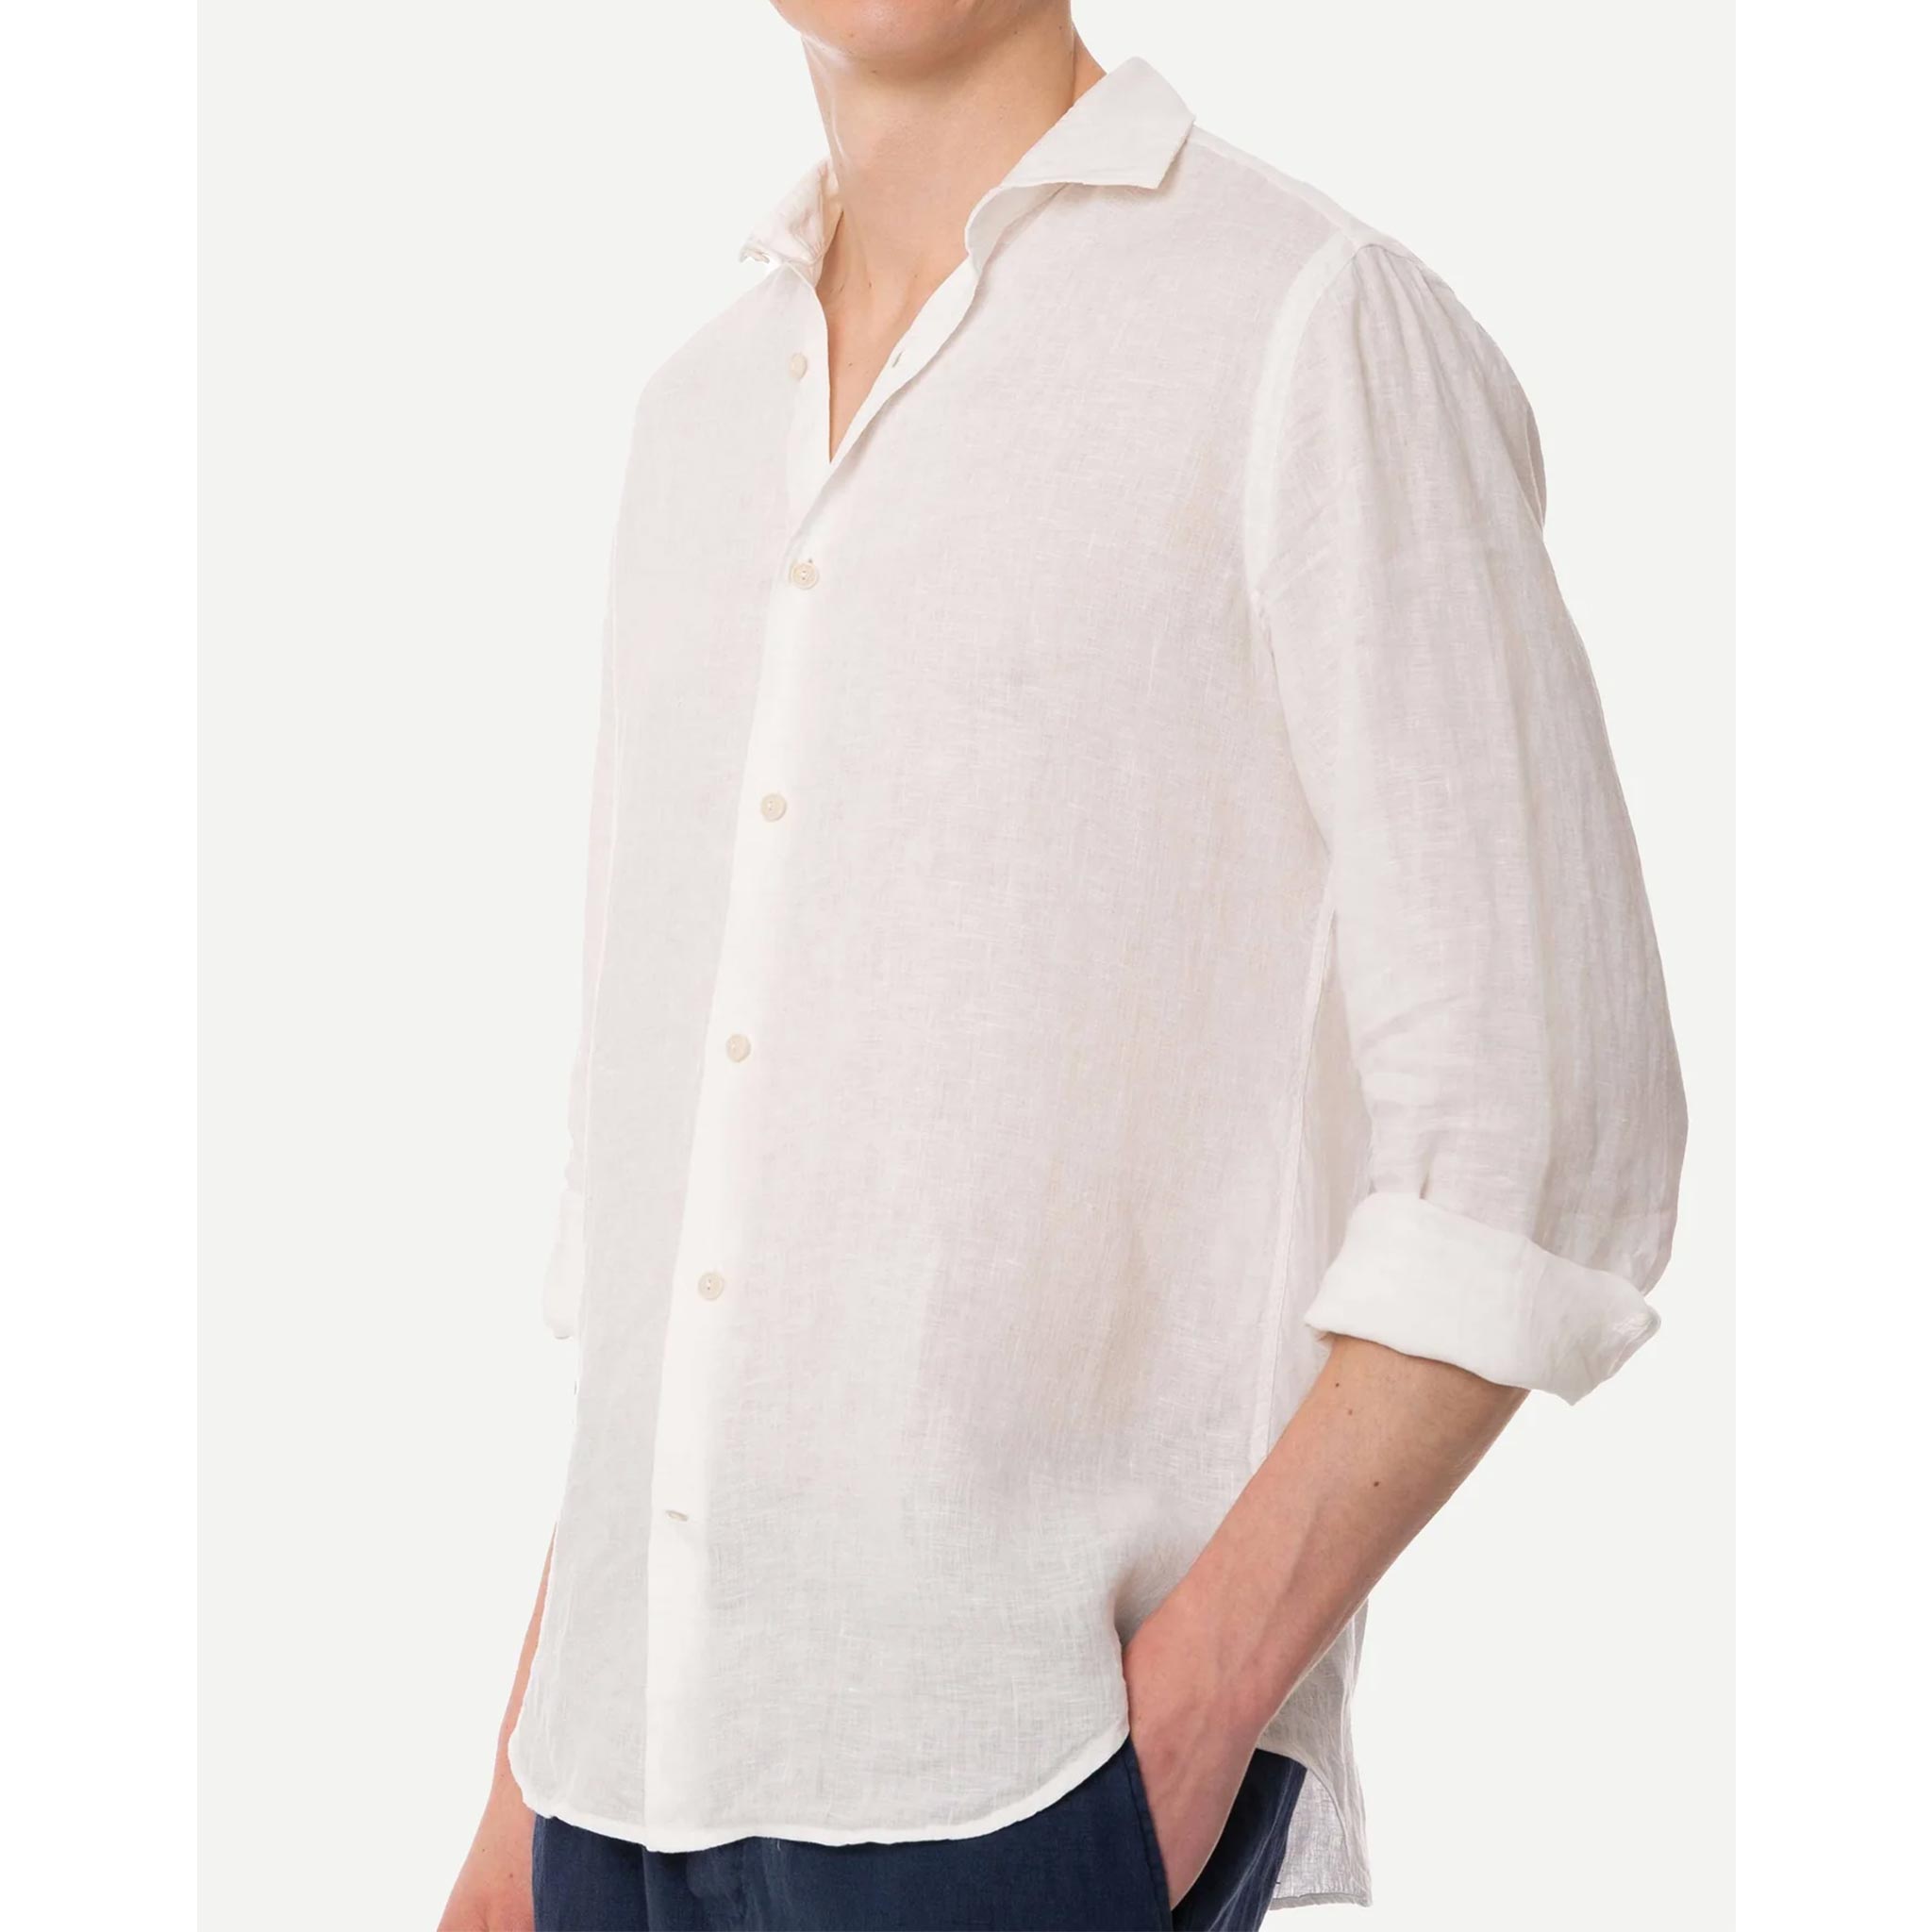 Pamplona Shirt in White